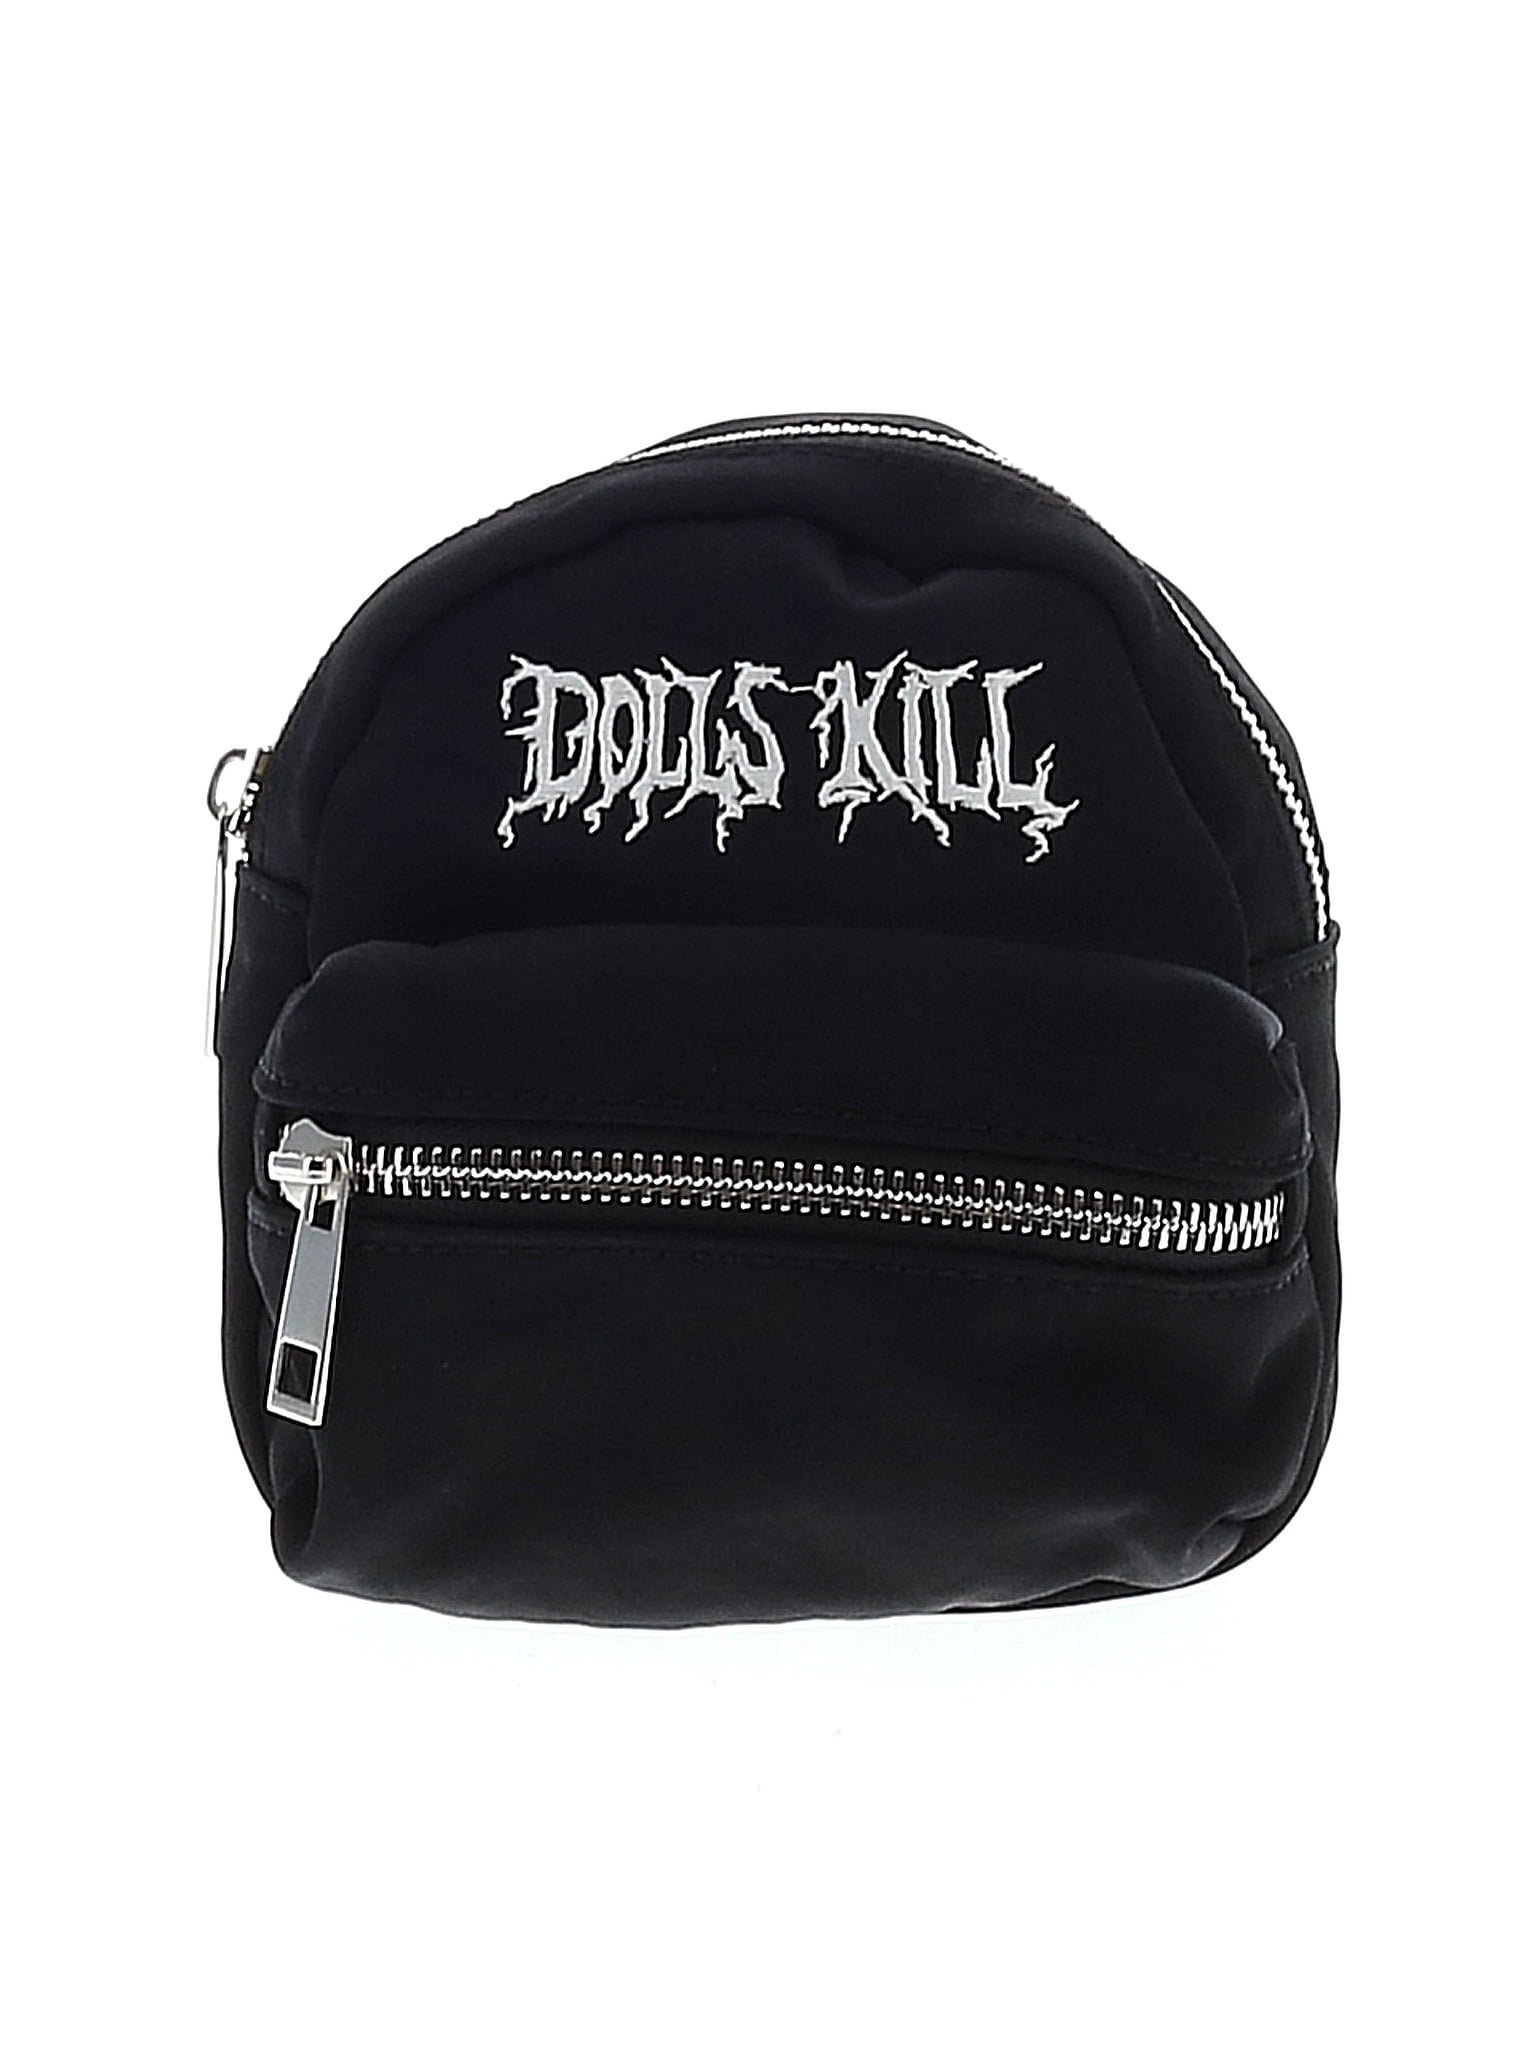 Dolls Kill Handbags Best Sale - www.edoc.com.vn 1694014470